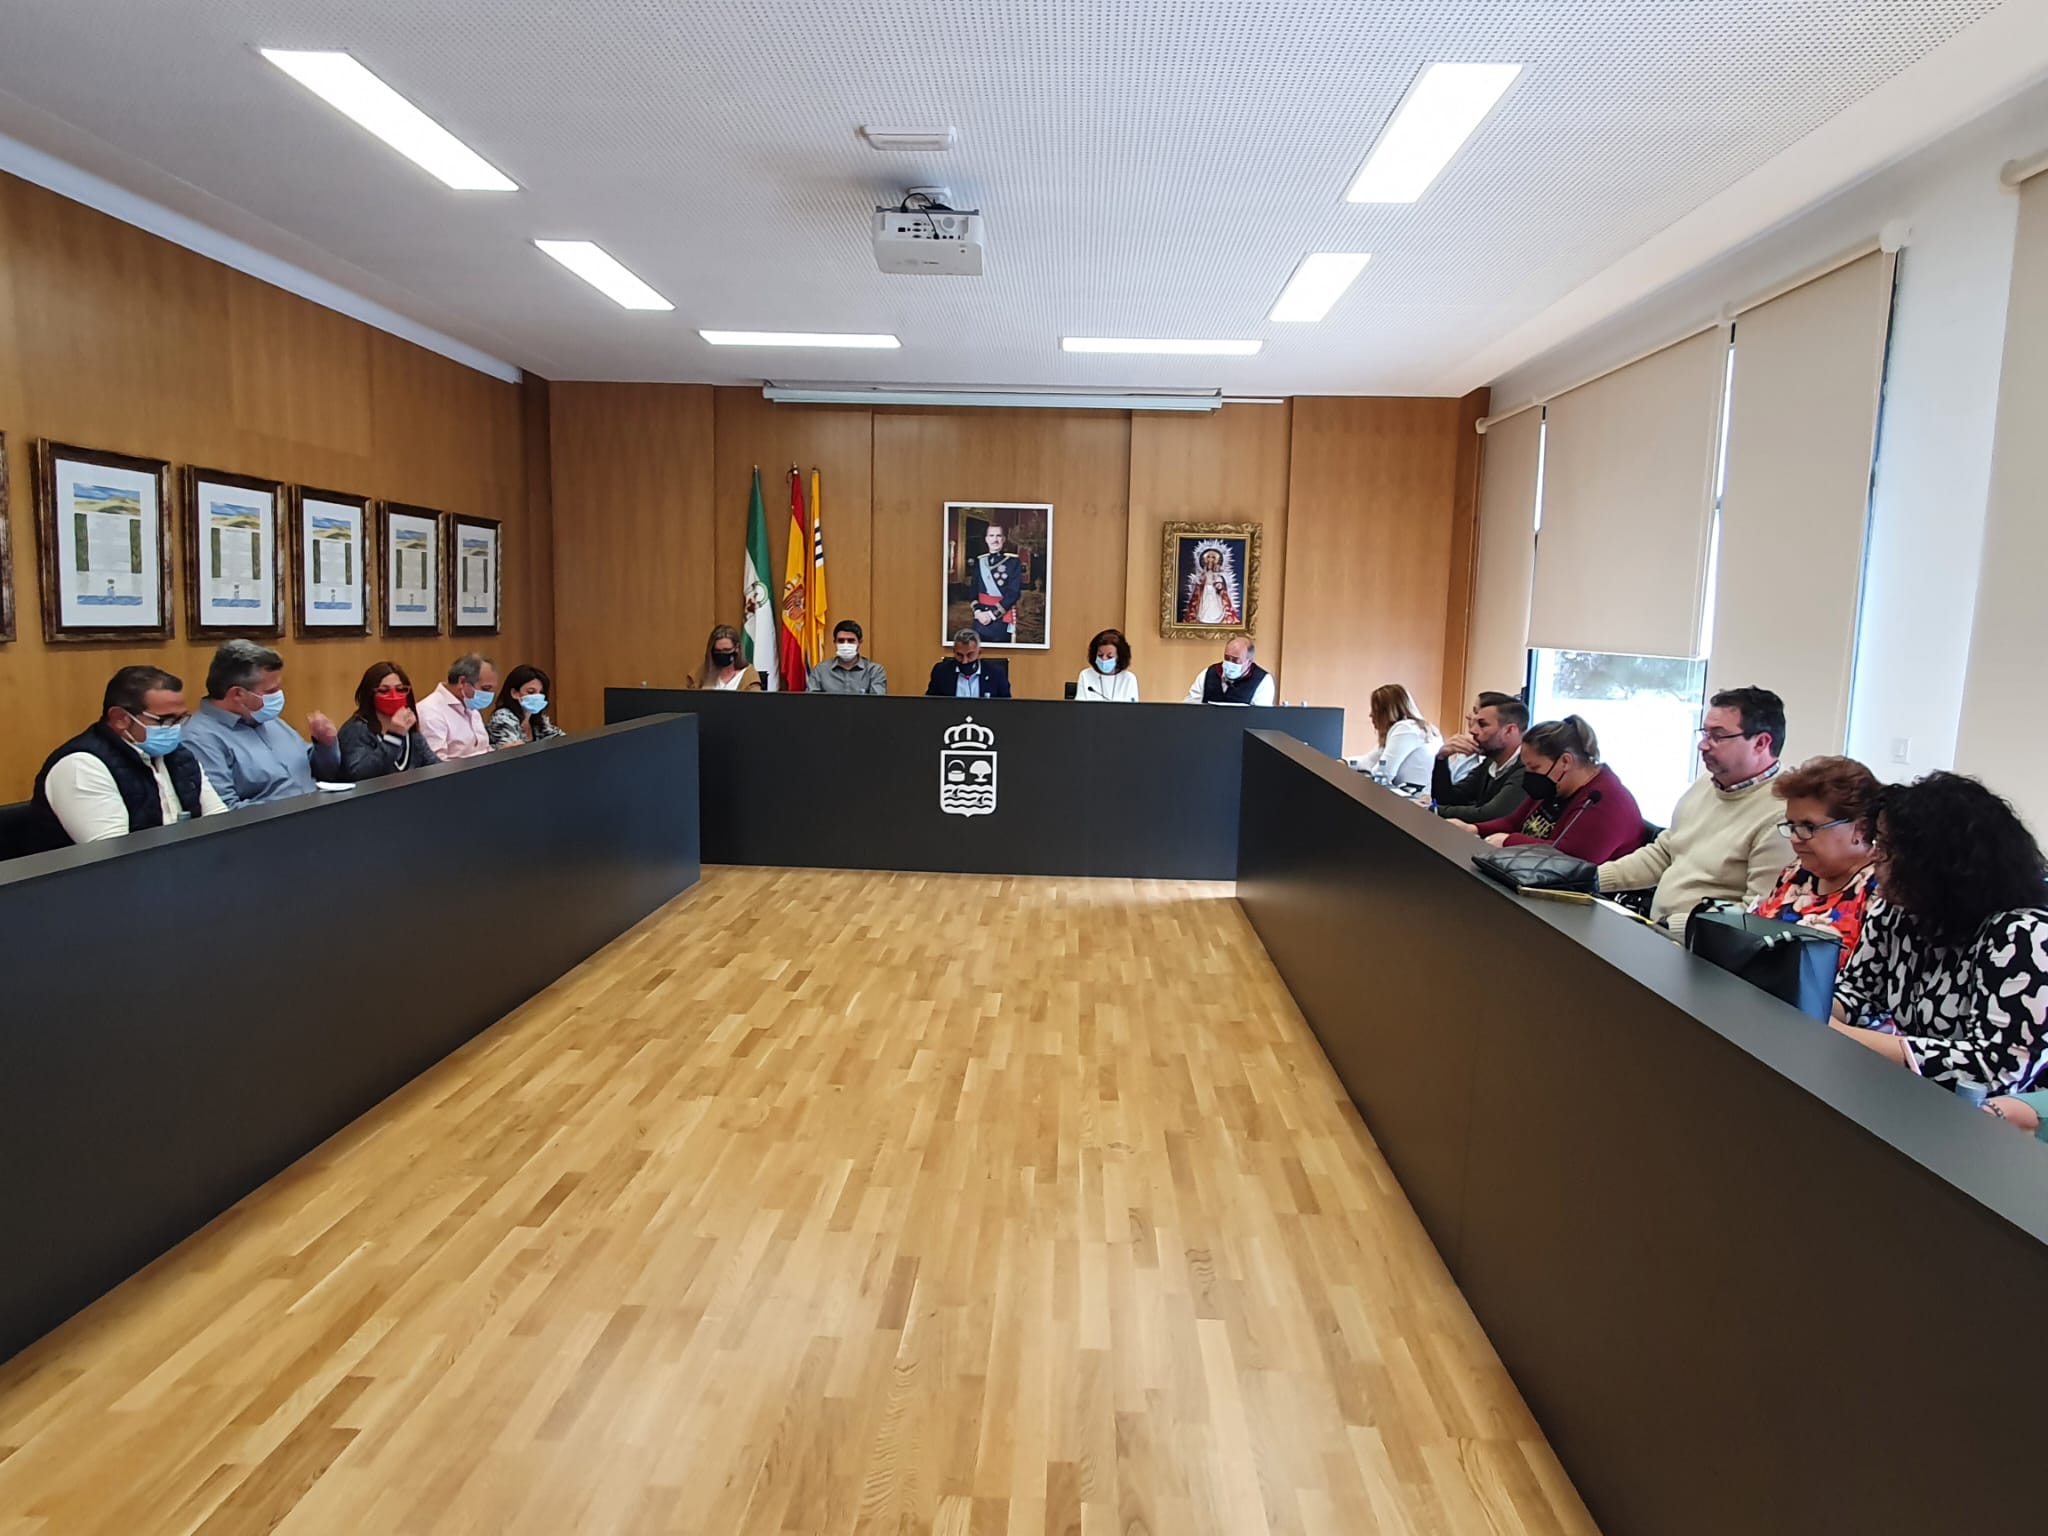 El pleno isleño aprueba el protocolo general de actuación de la agenda urbana, Isla Cristina 2030